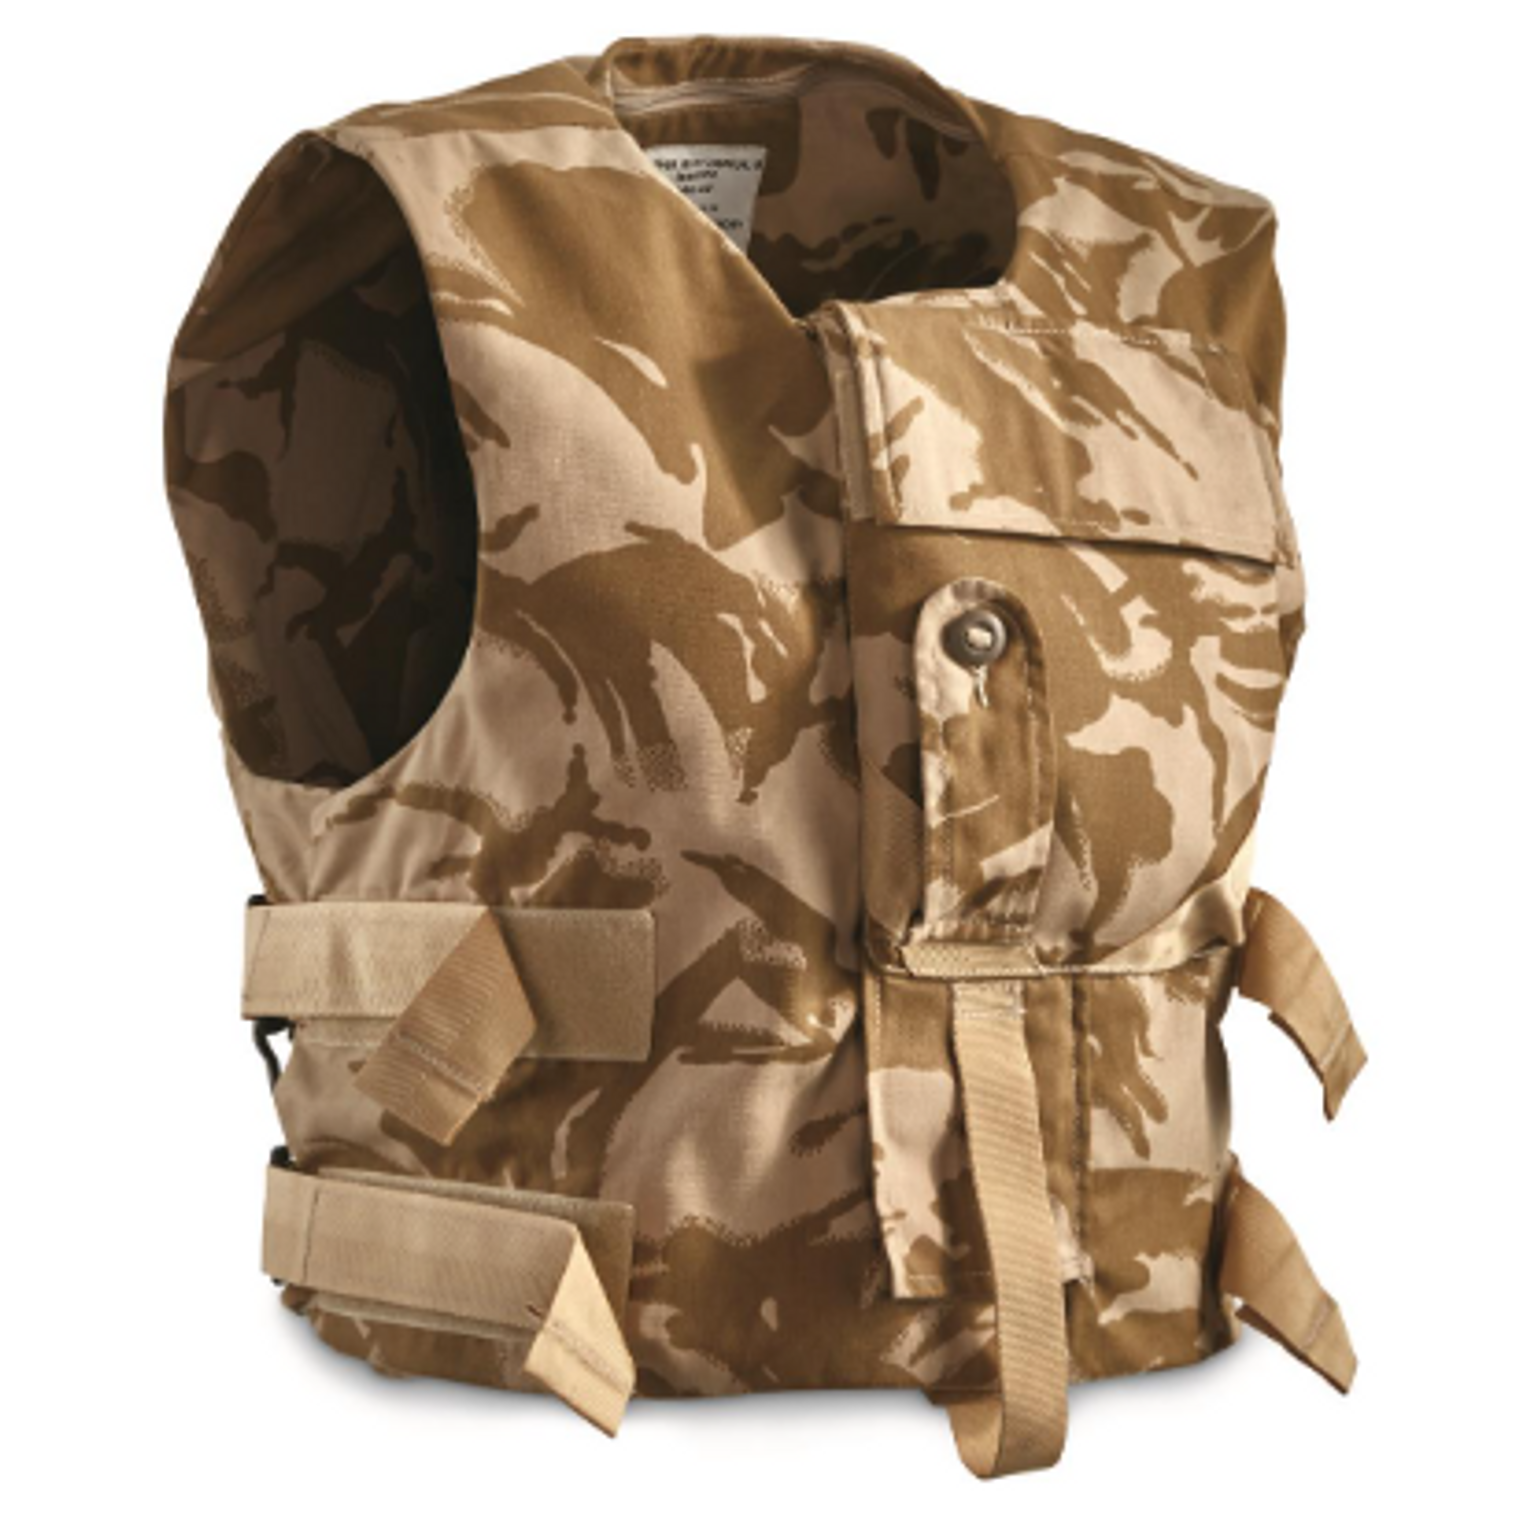 British Military Issue Desert Camo Combat Vest